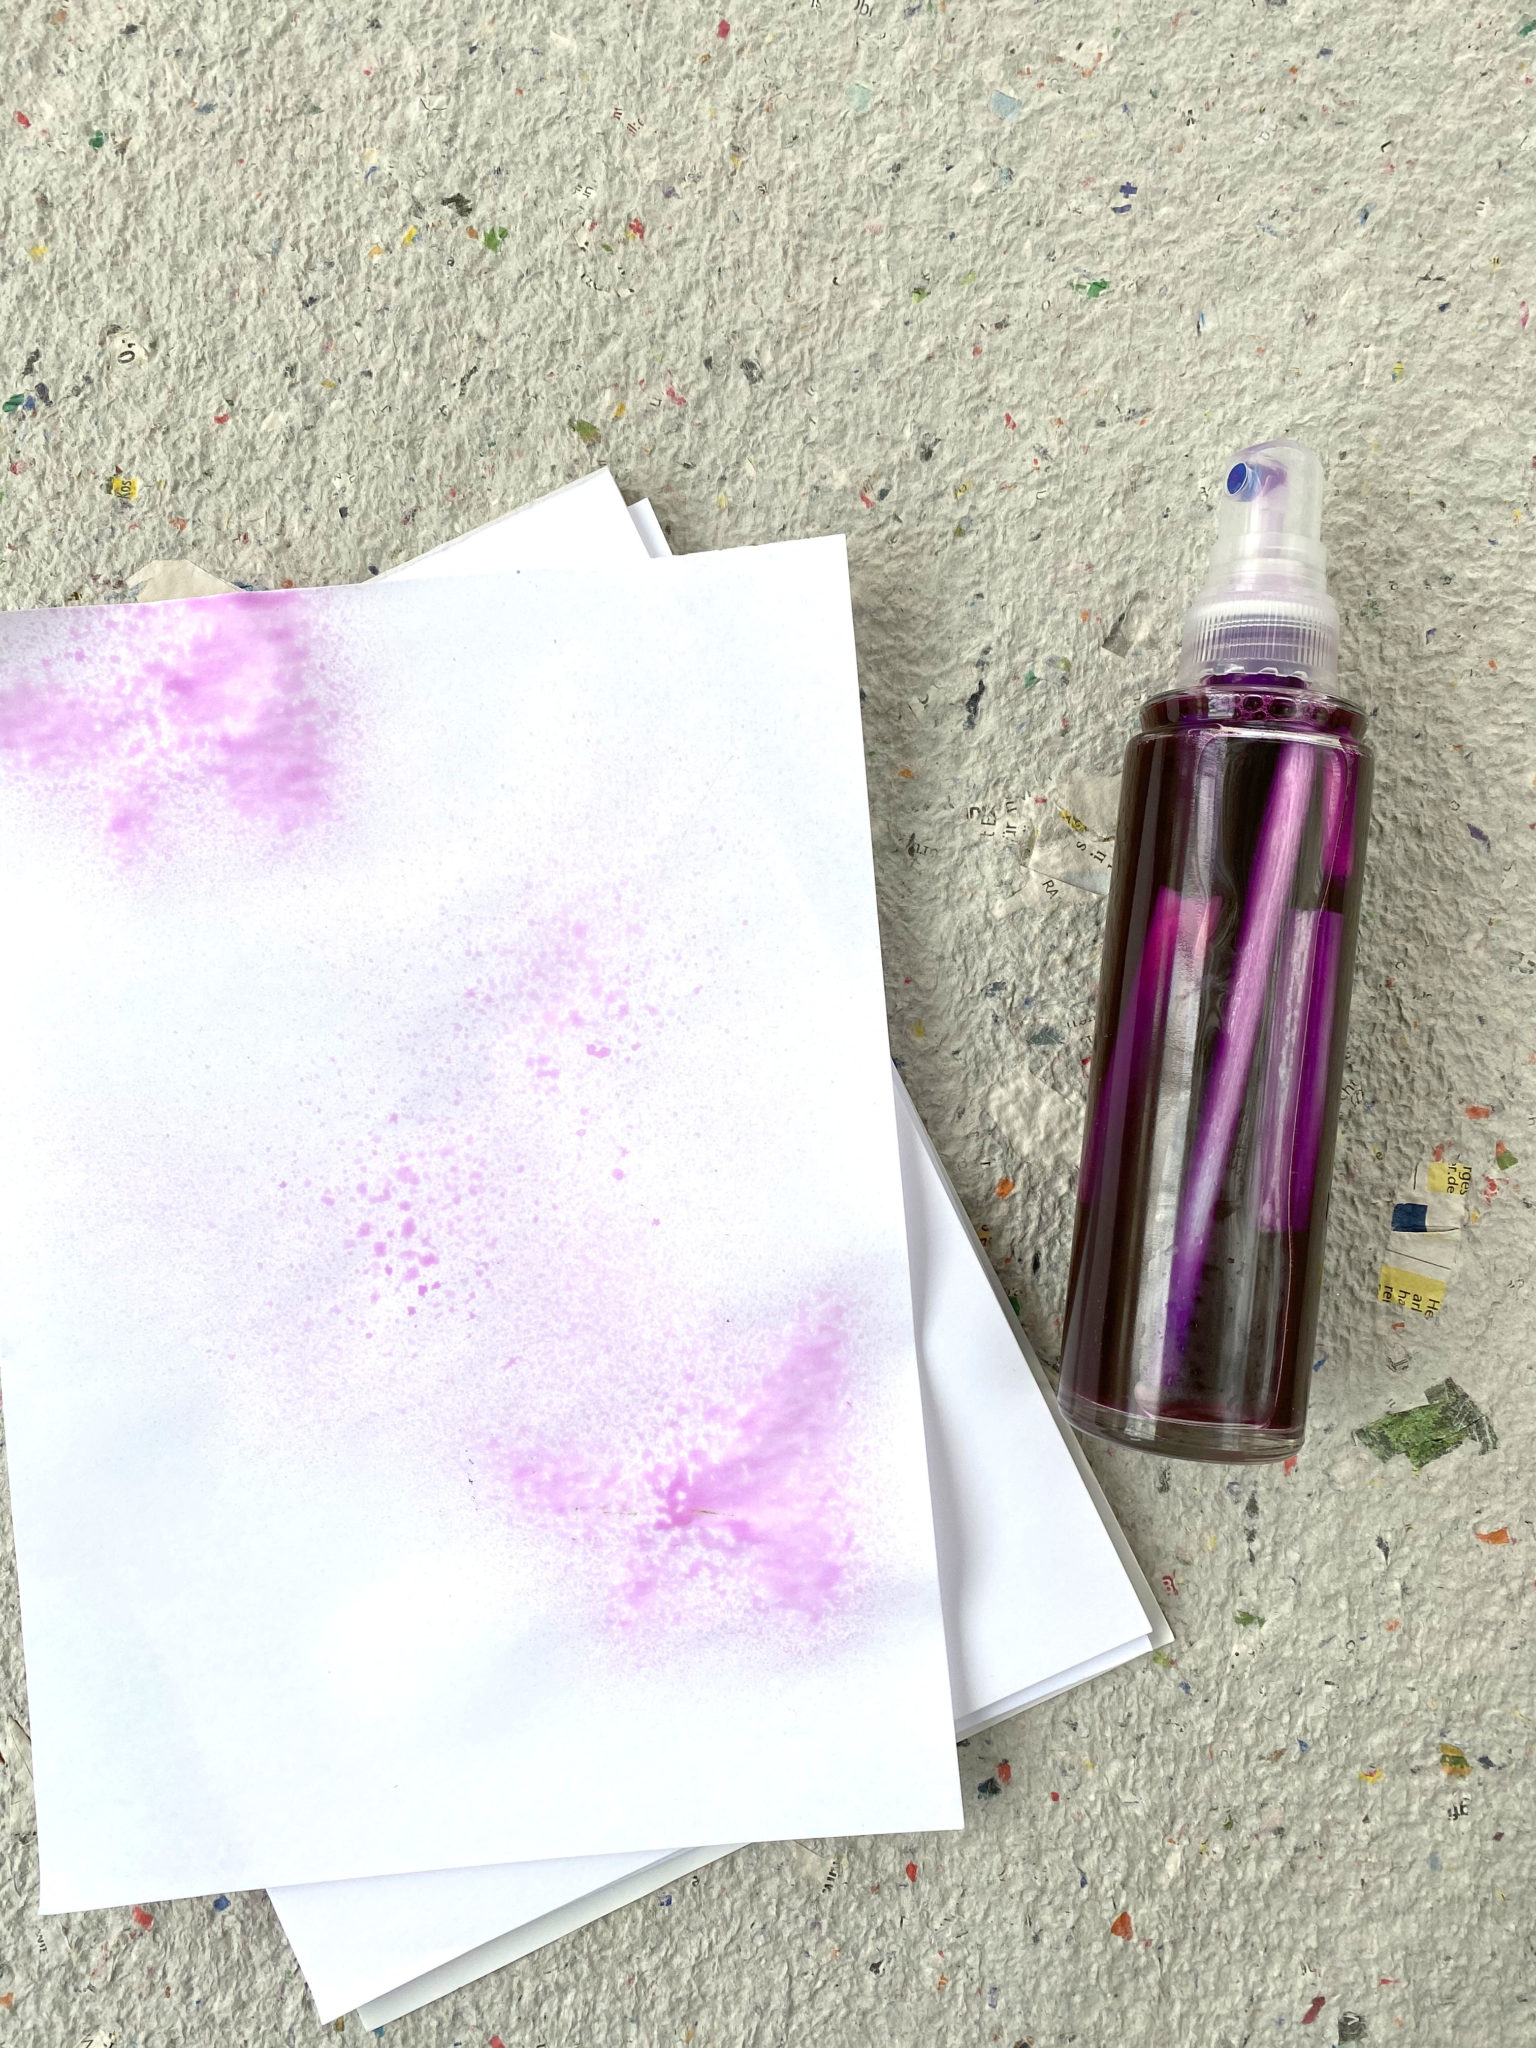 Neben einer Sprühflasche gefüllt mit Patronen aus Filzstiften und dadurch lila verfärbten Wasser liegt ein Blatt Papier mit einem gesprühten lila Farbklecks.